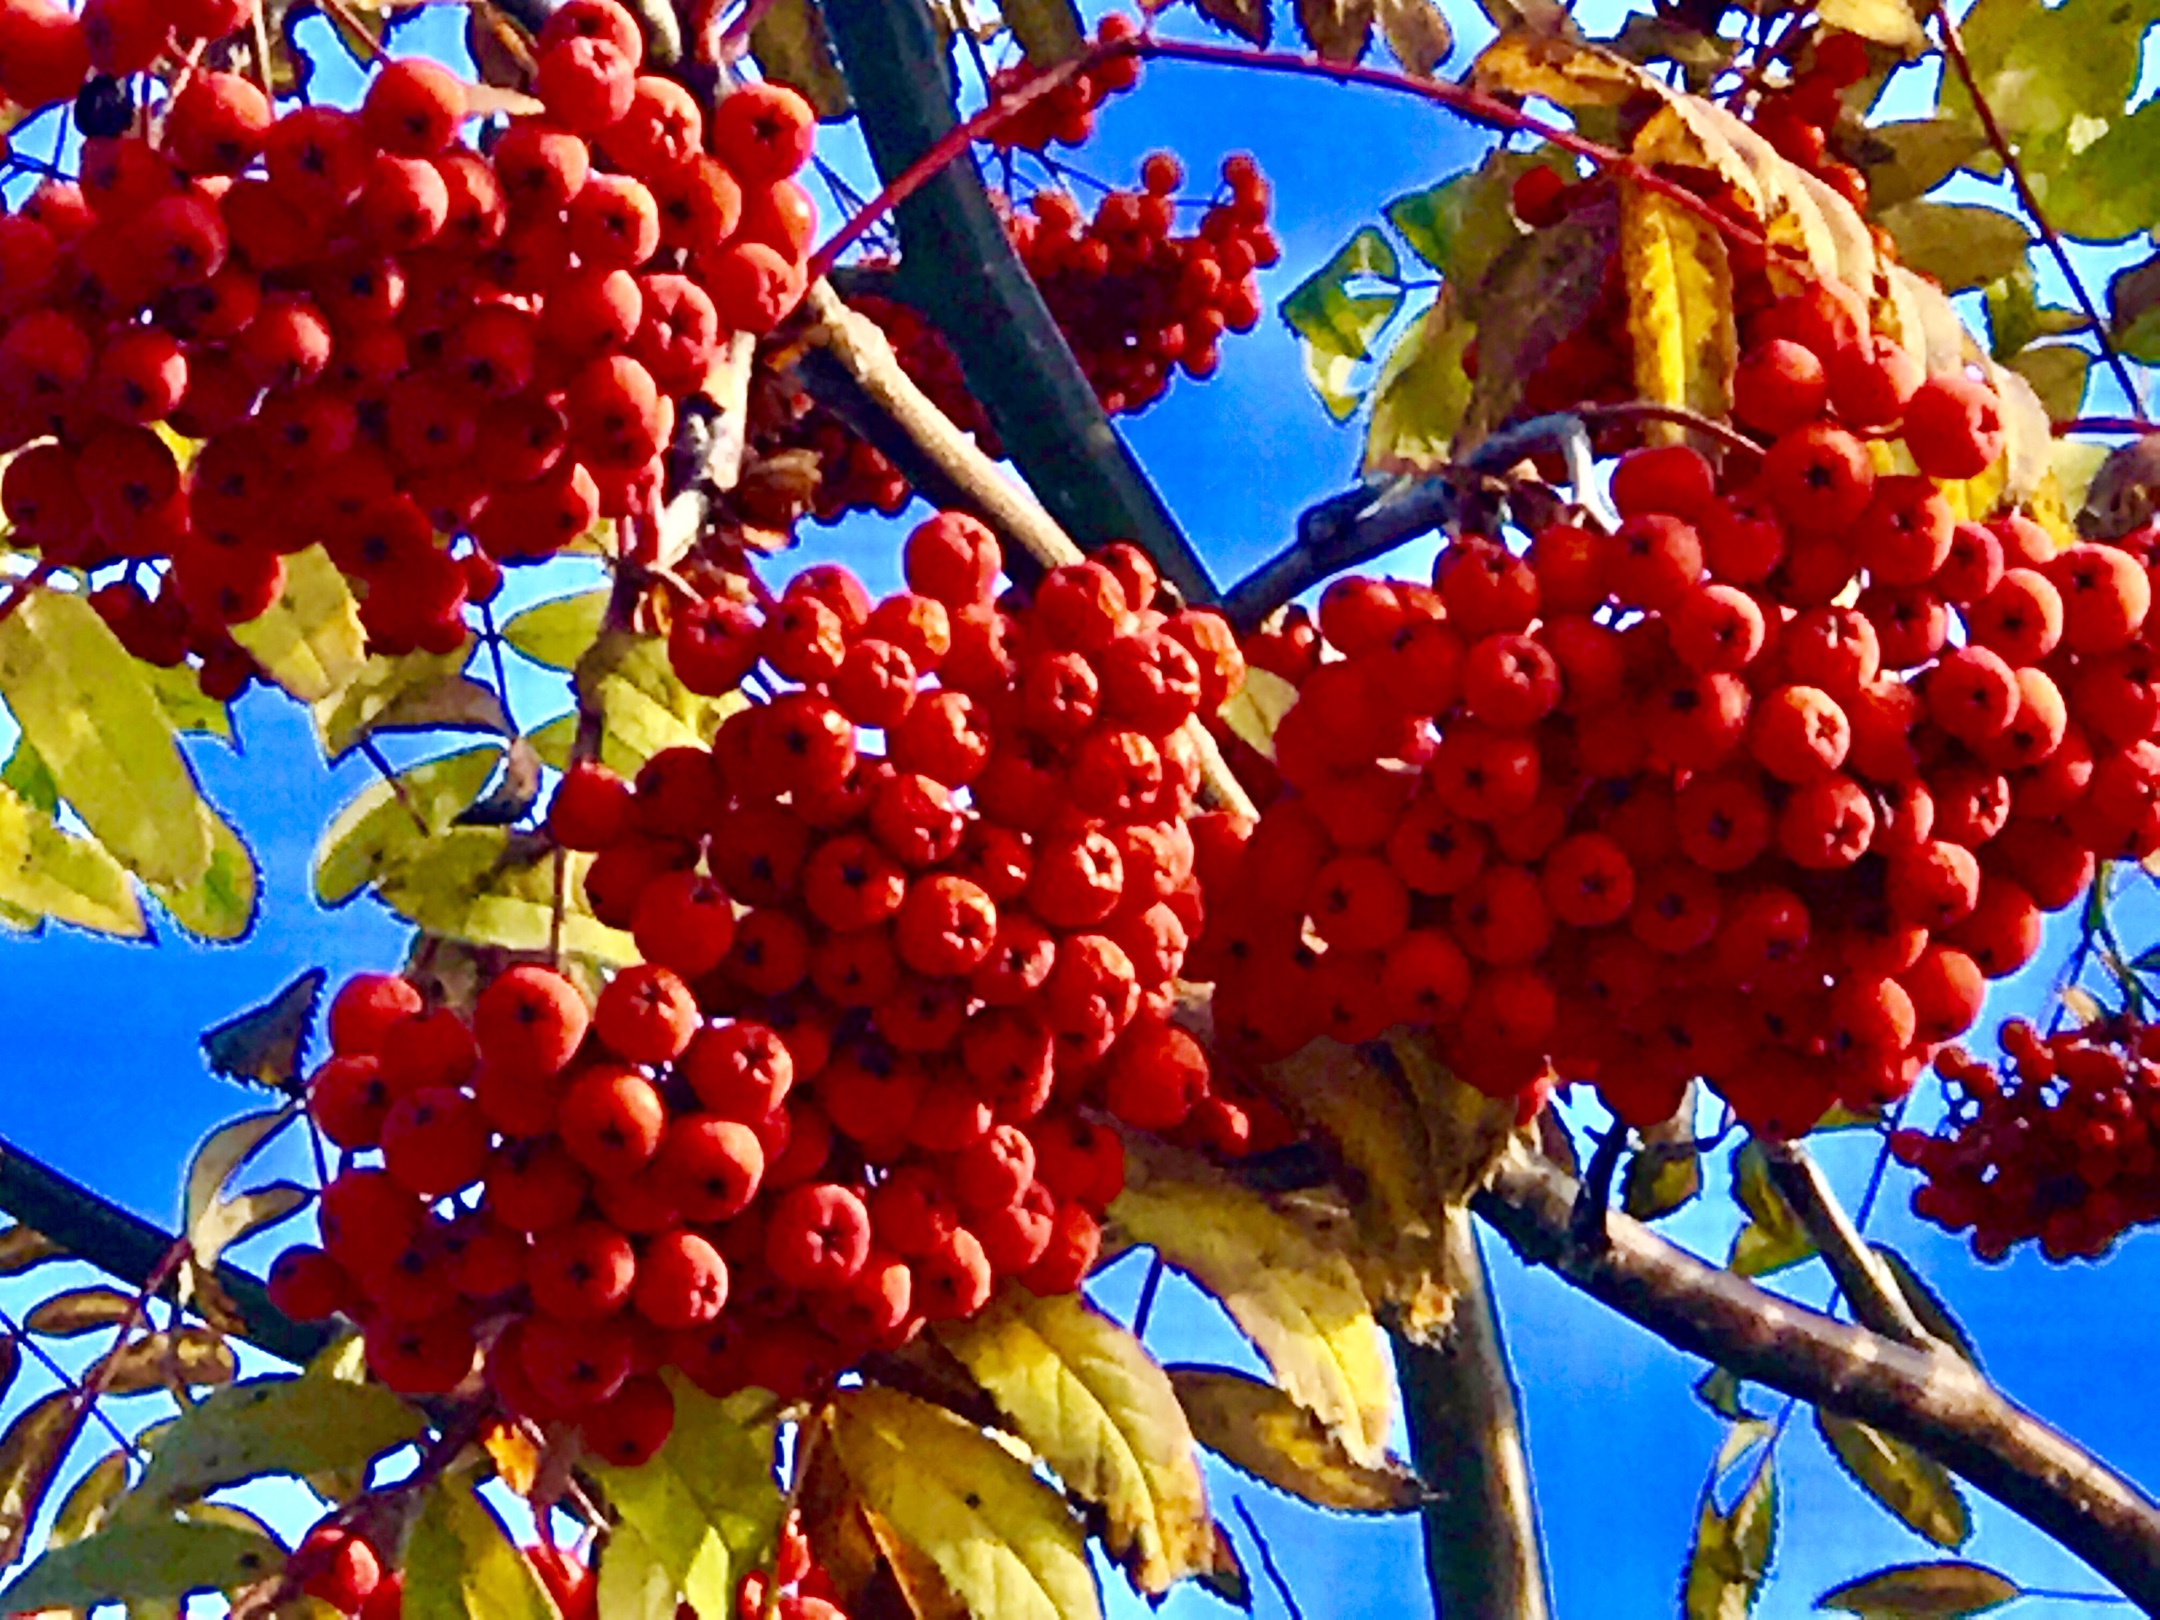 漂亮的红叶 丰硕的果实,为深秋增添了亮丽的光彩!2018